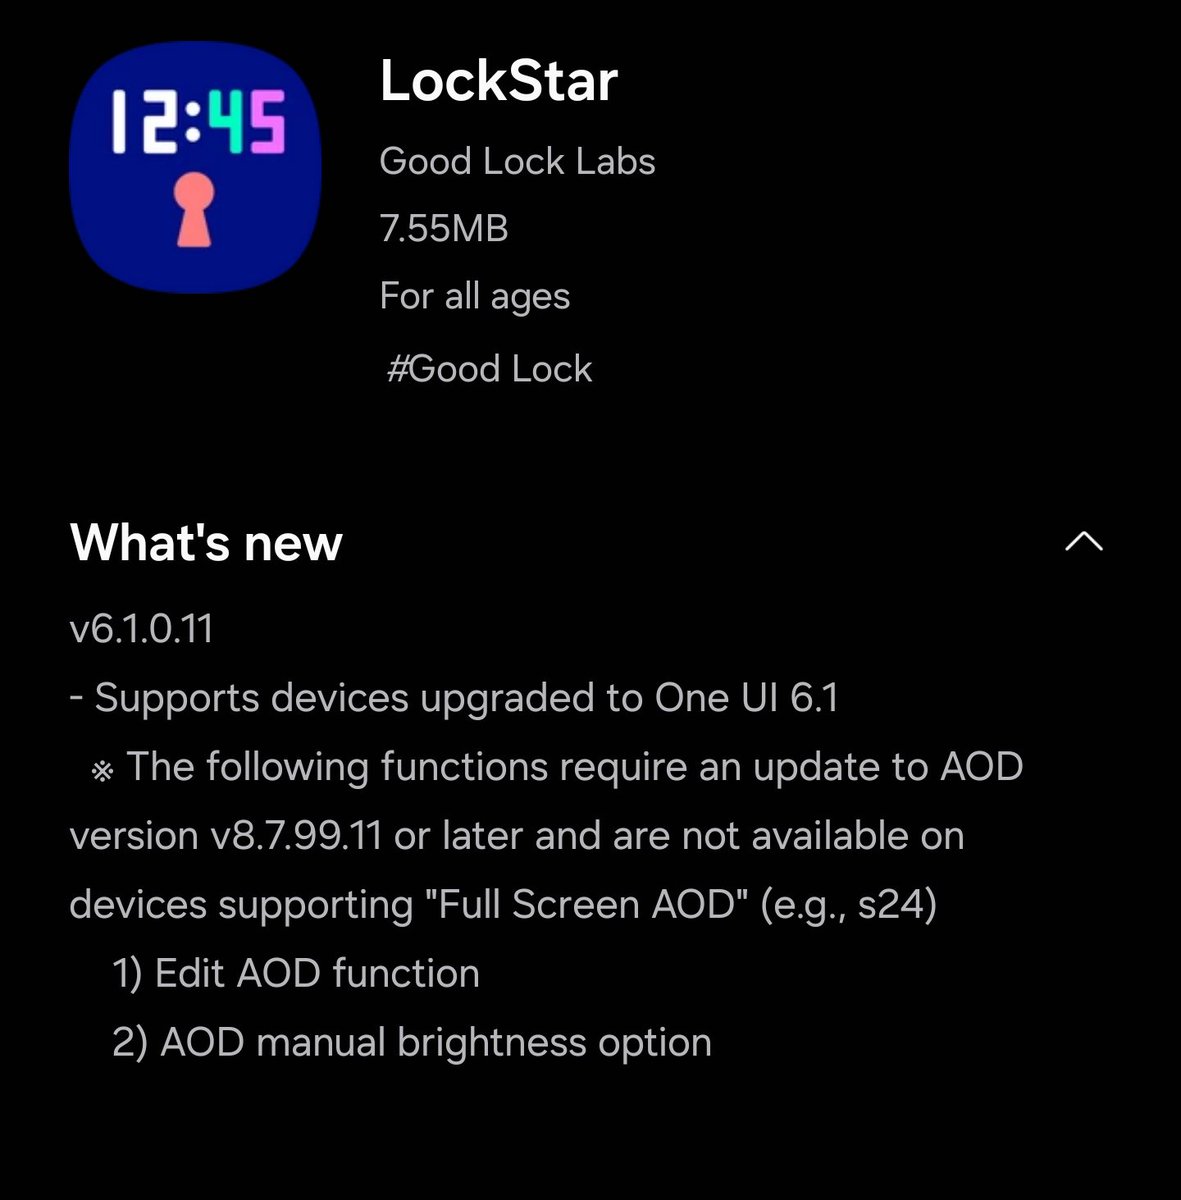 New lockStar update add AOD manual brightness option #OneUI6.1